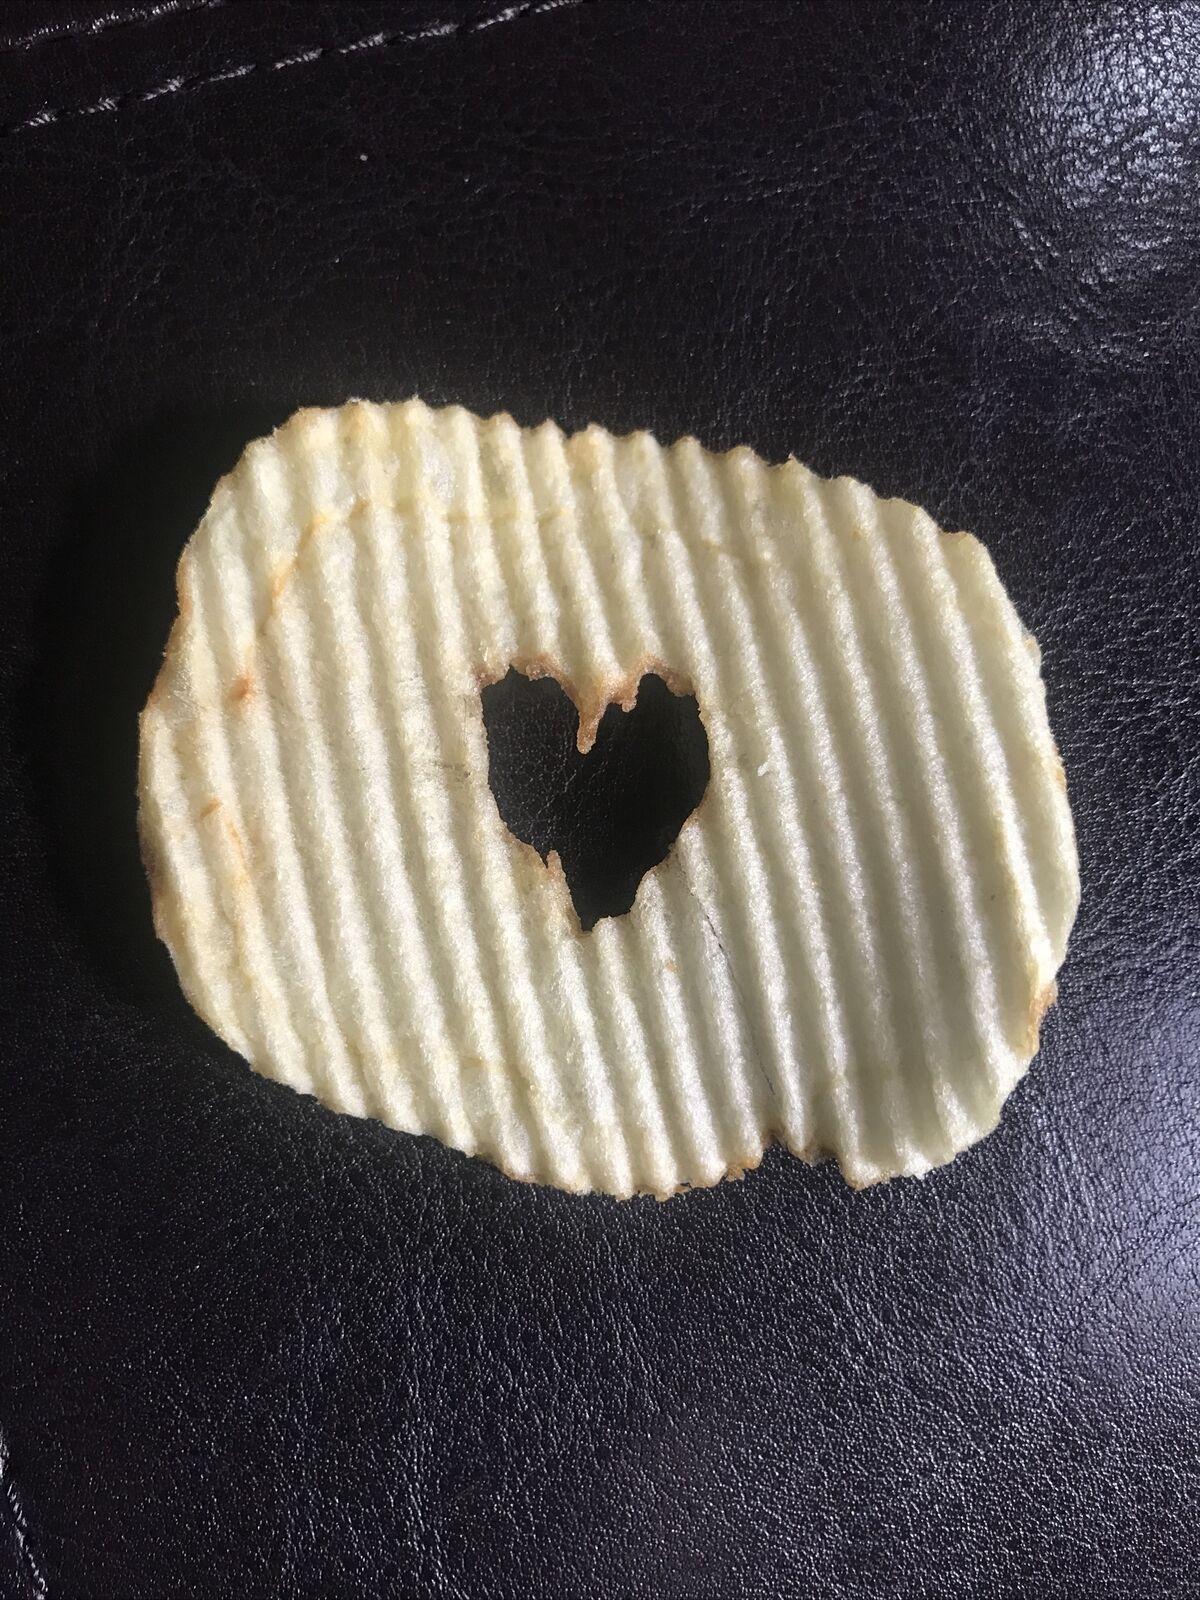 Ruffle Kansas Award City Mall Love Potato Chip Heart